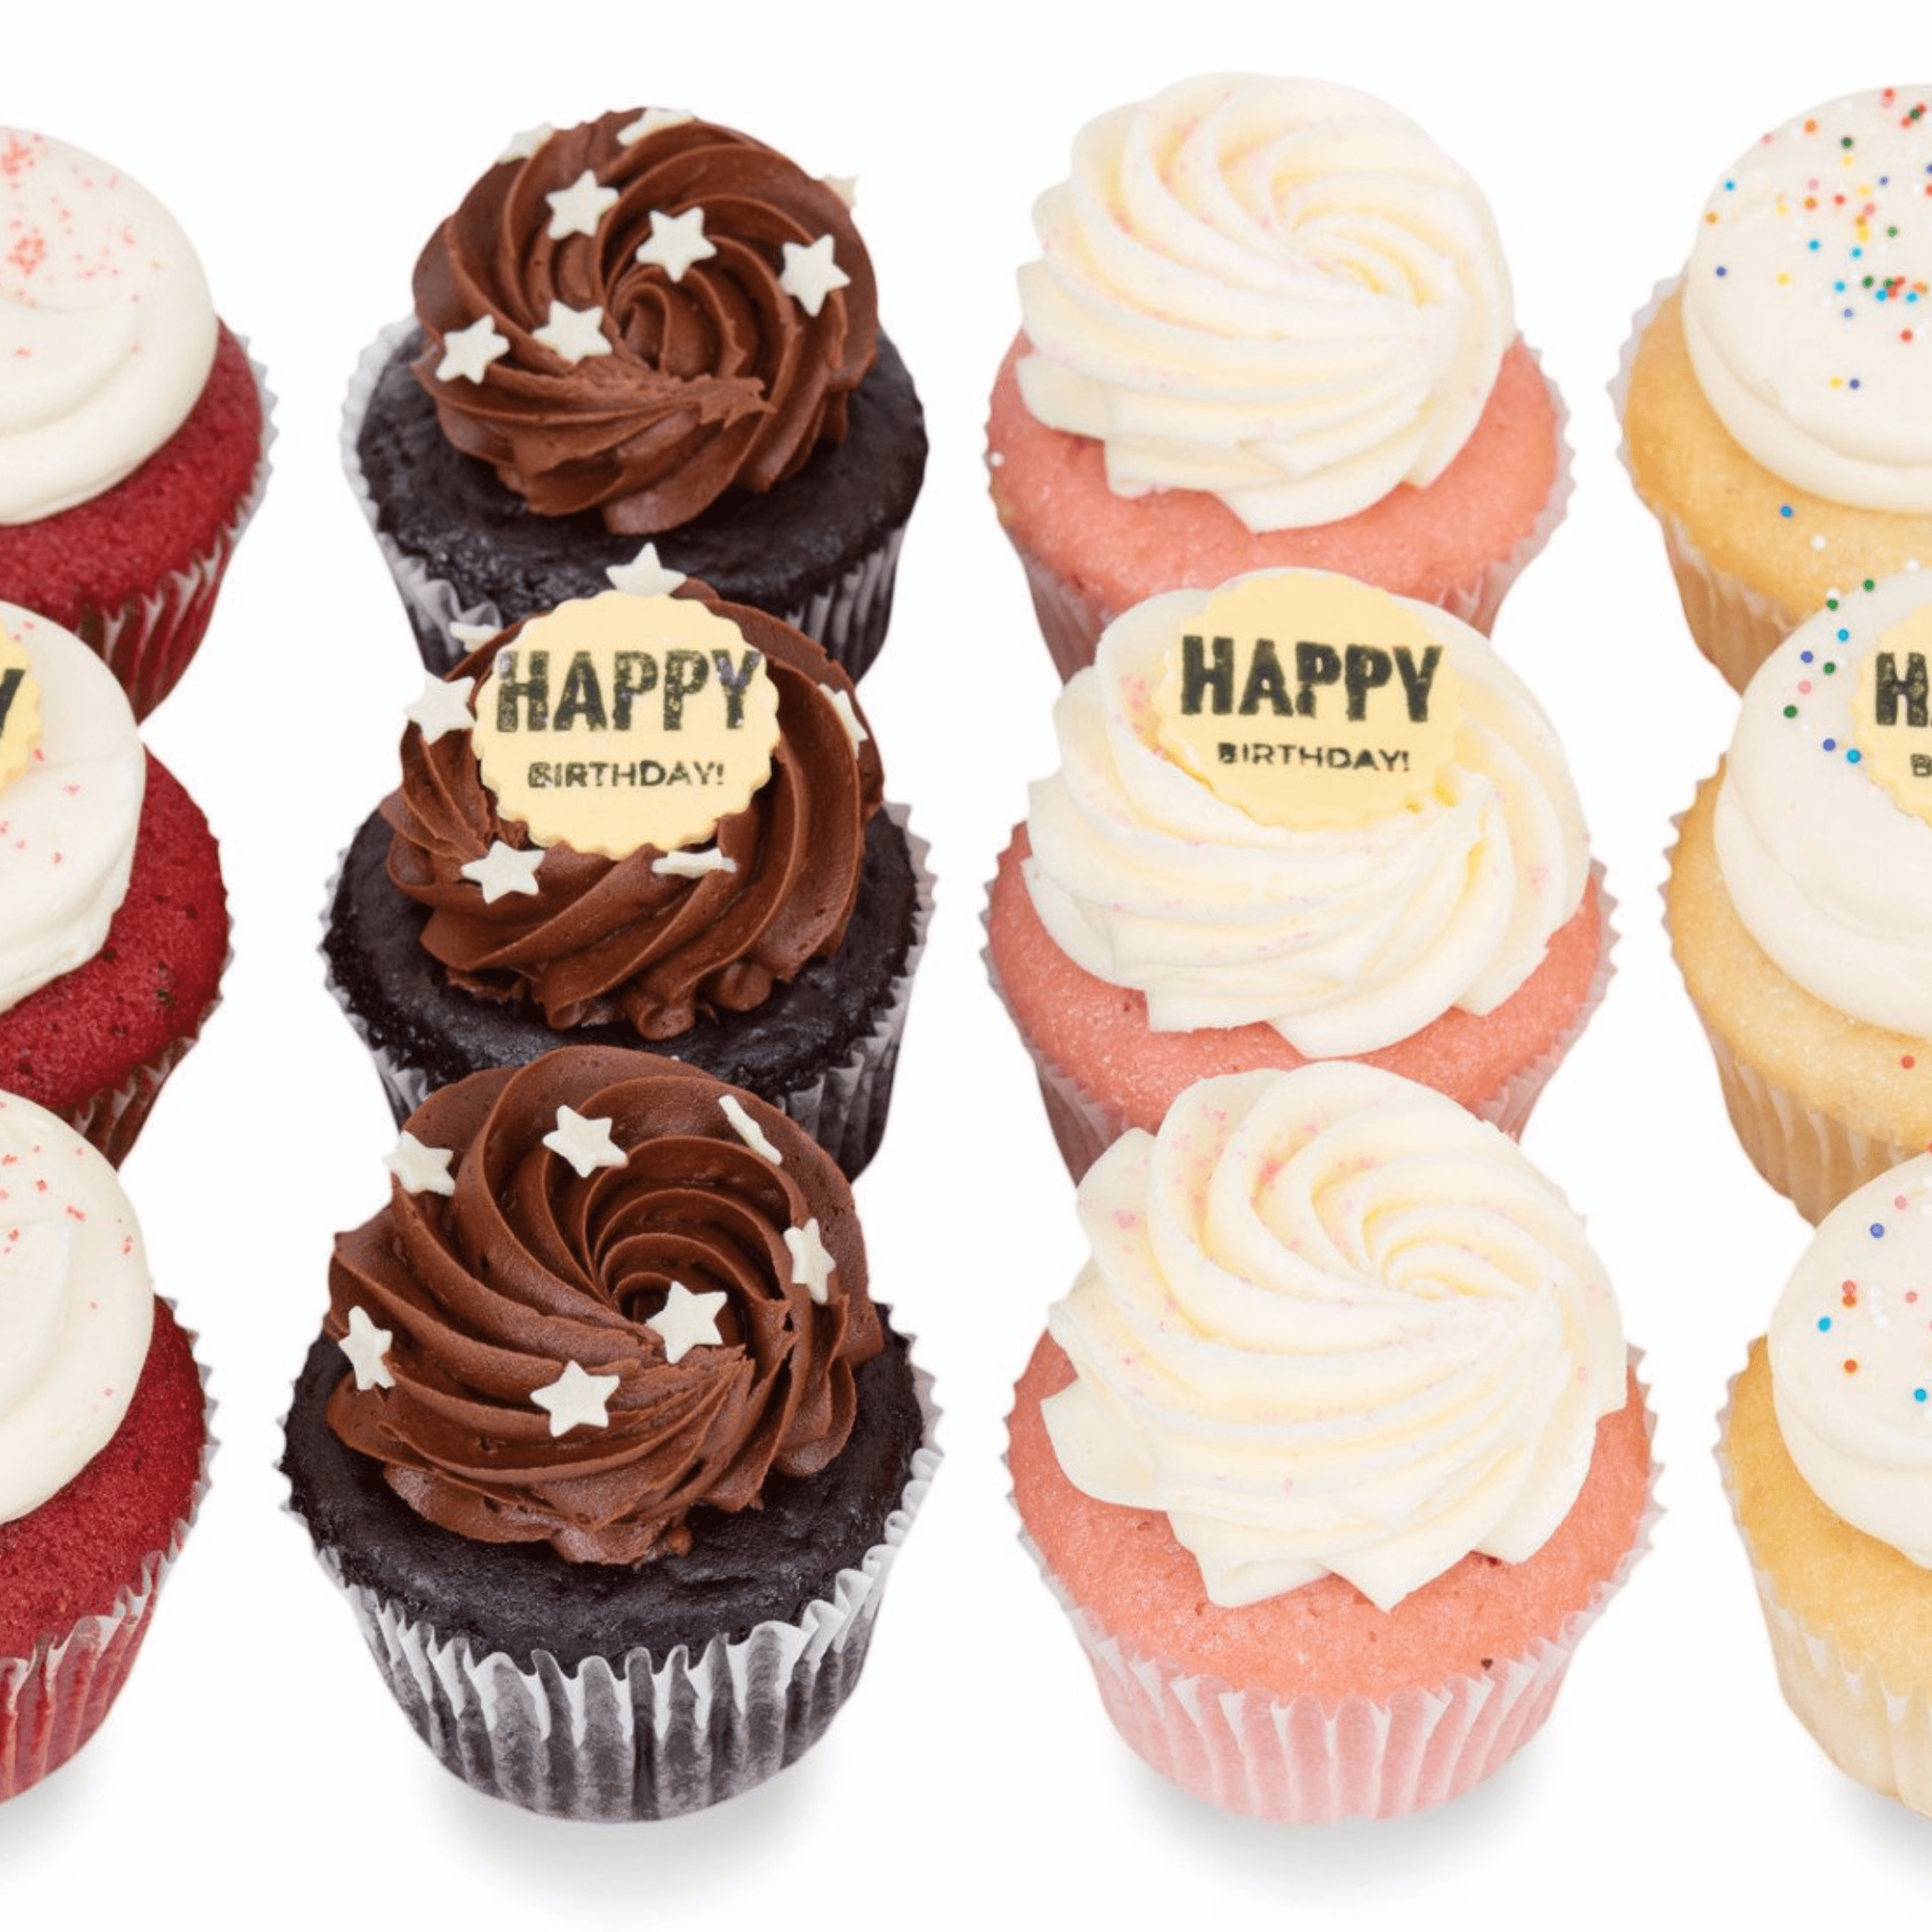 Happy Birthday Dozen Cupcakes - Sift Dessert Bar